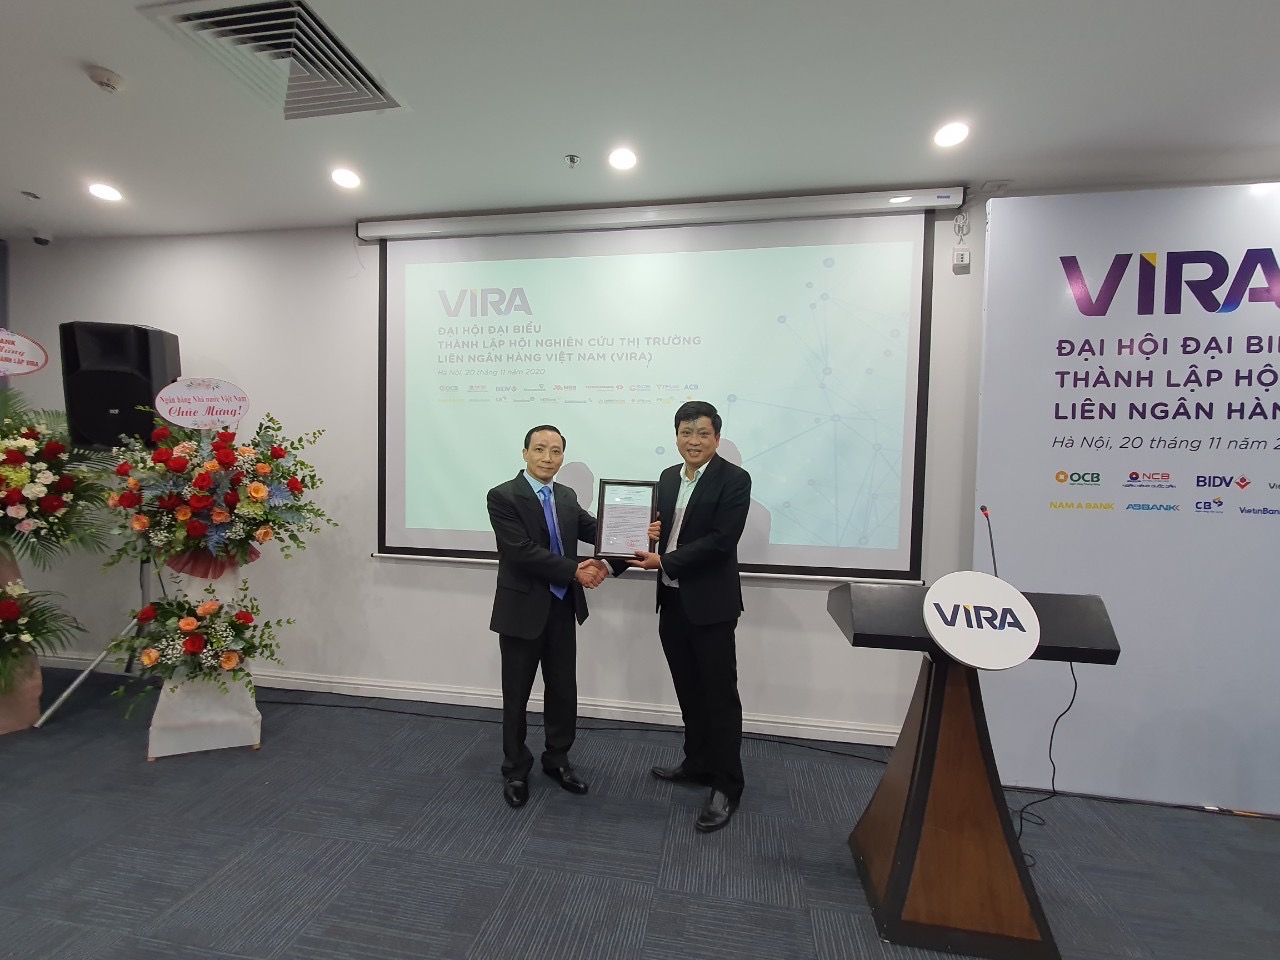 Đại hội thành lập Hội Nghiên cứu thị trường liên ngân hàng Việt Nam đã thành công tốt đẹp